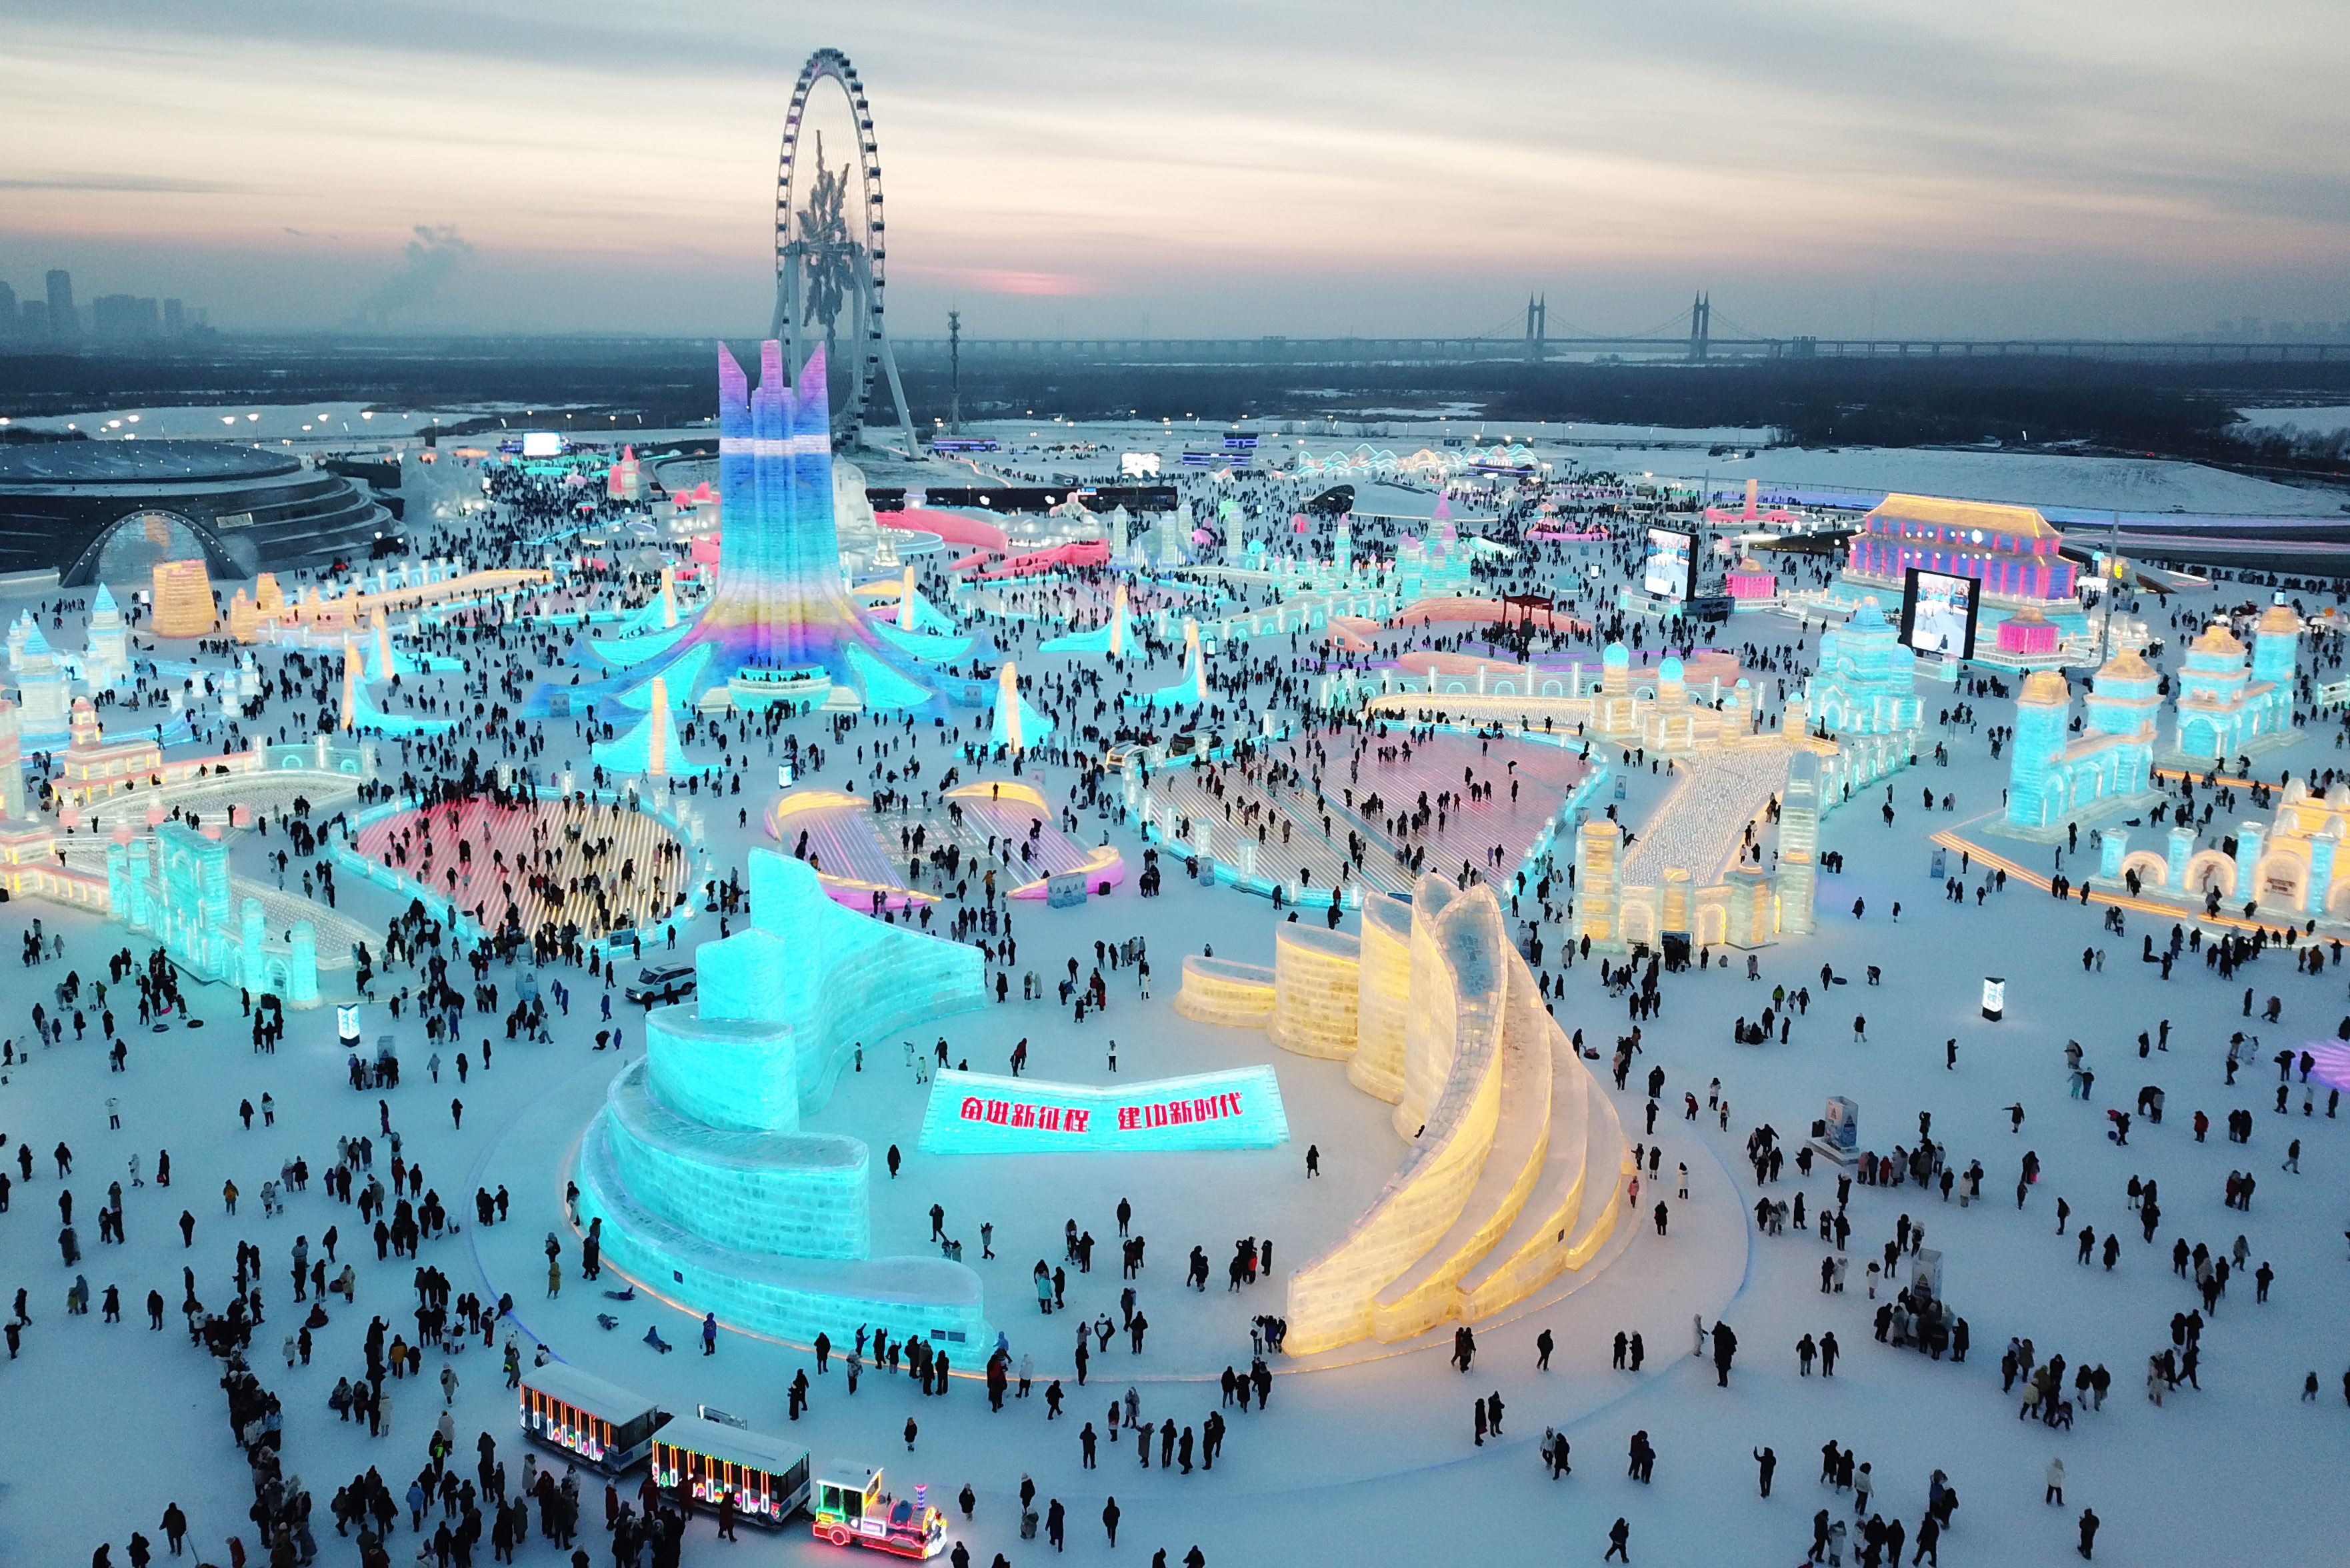 游客在黑龙江哈尔滨冰雪大世界园区内游玩(无人机照片)